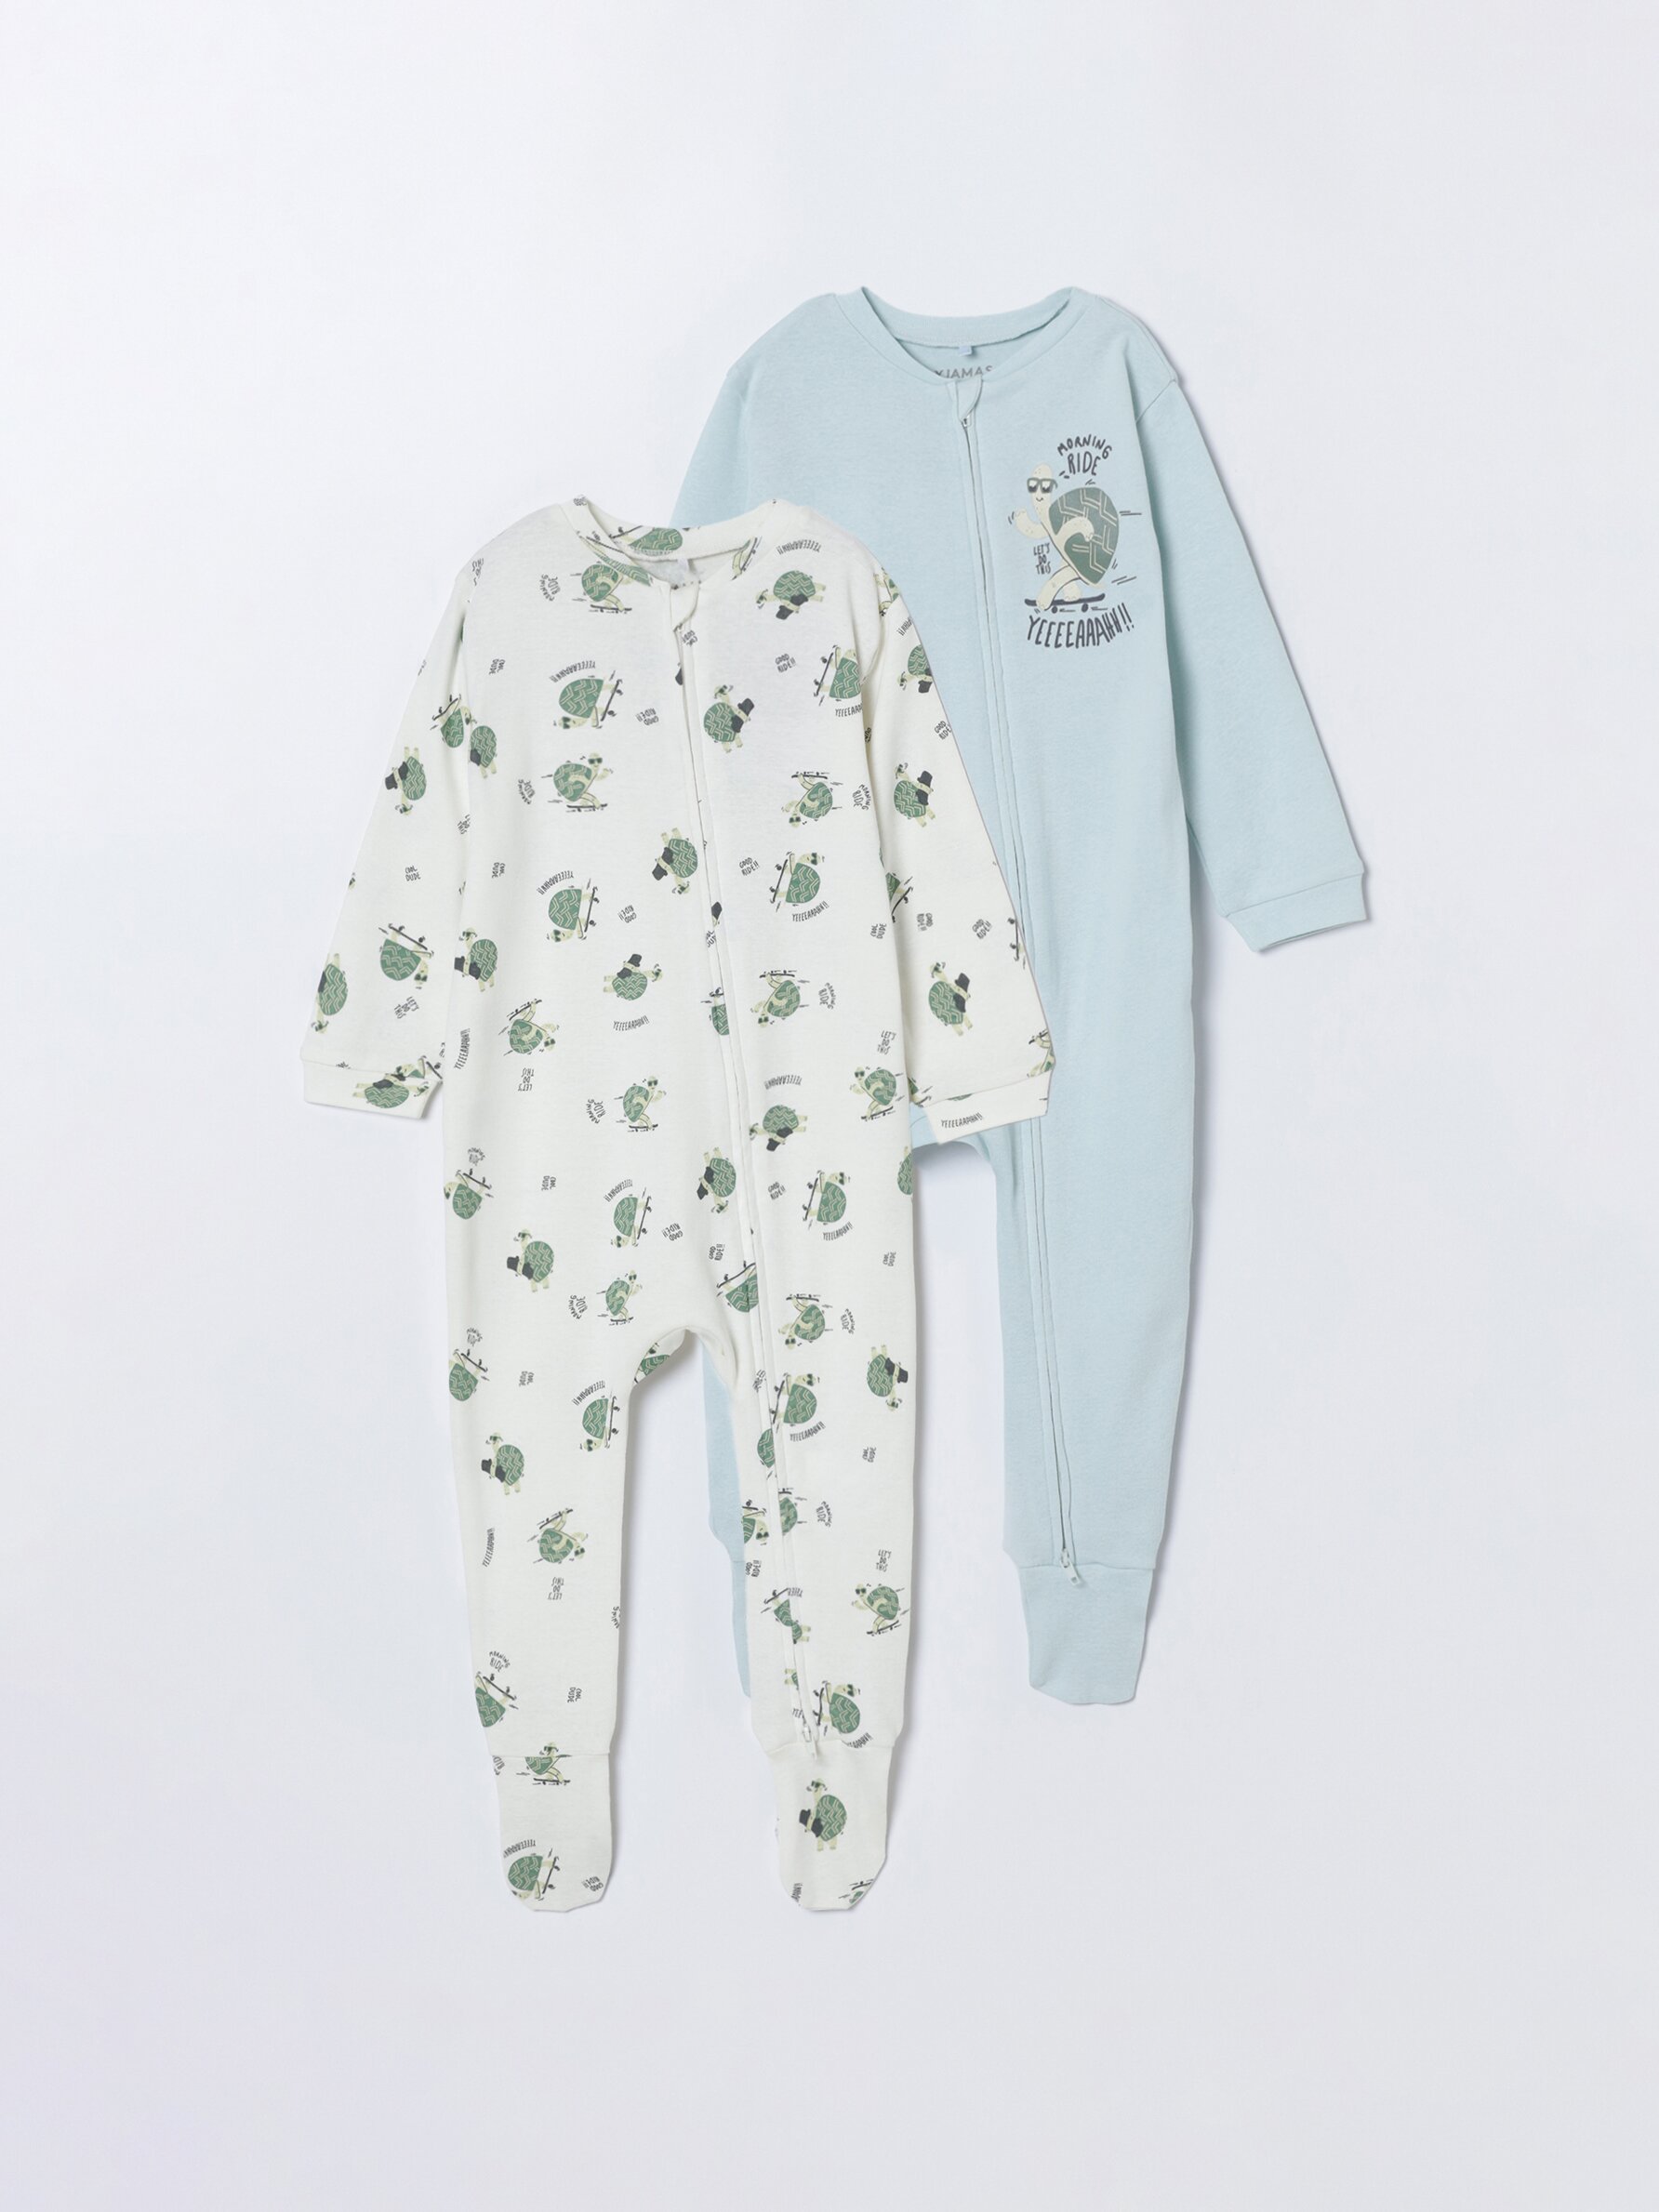 Pijamas de Bebés 0-3 Meses . Rayuela Kids Tienda en Línea